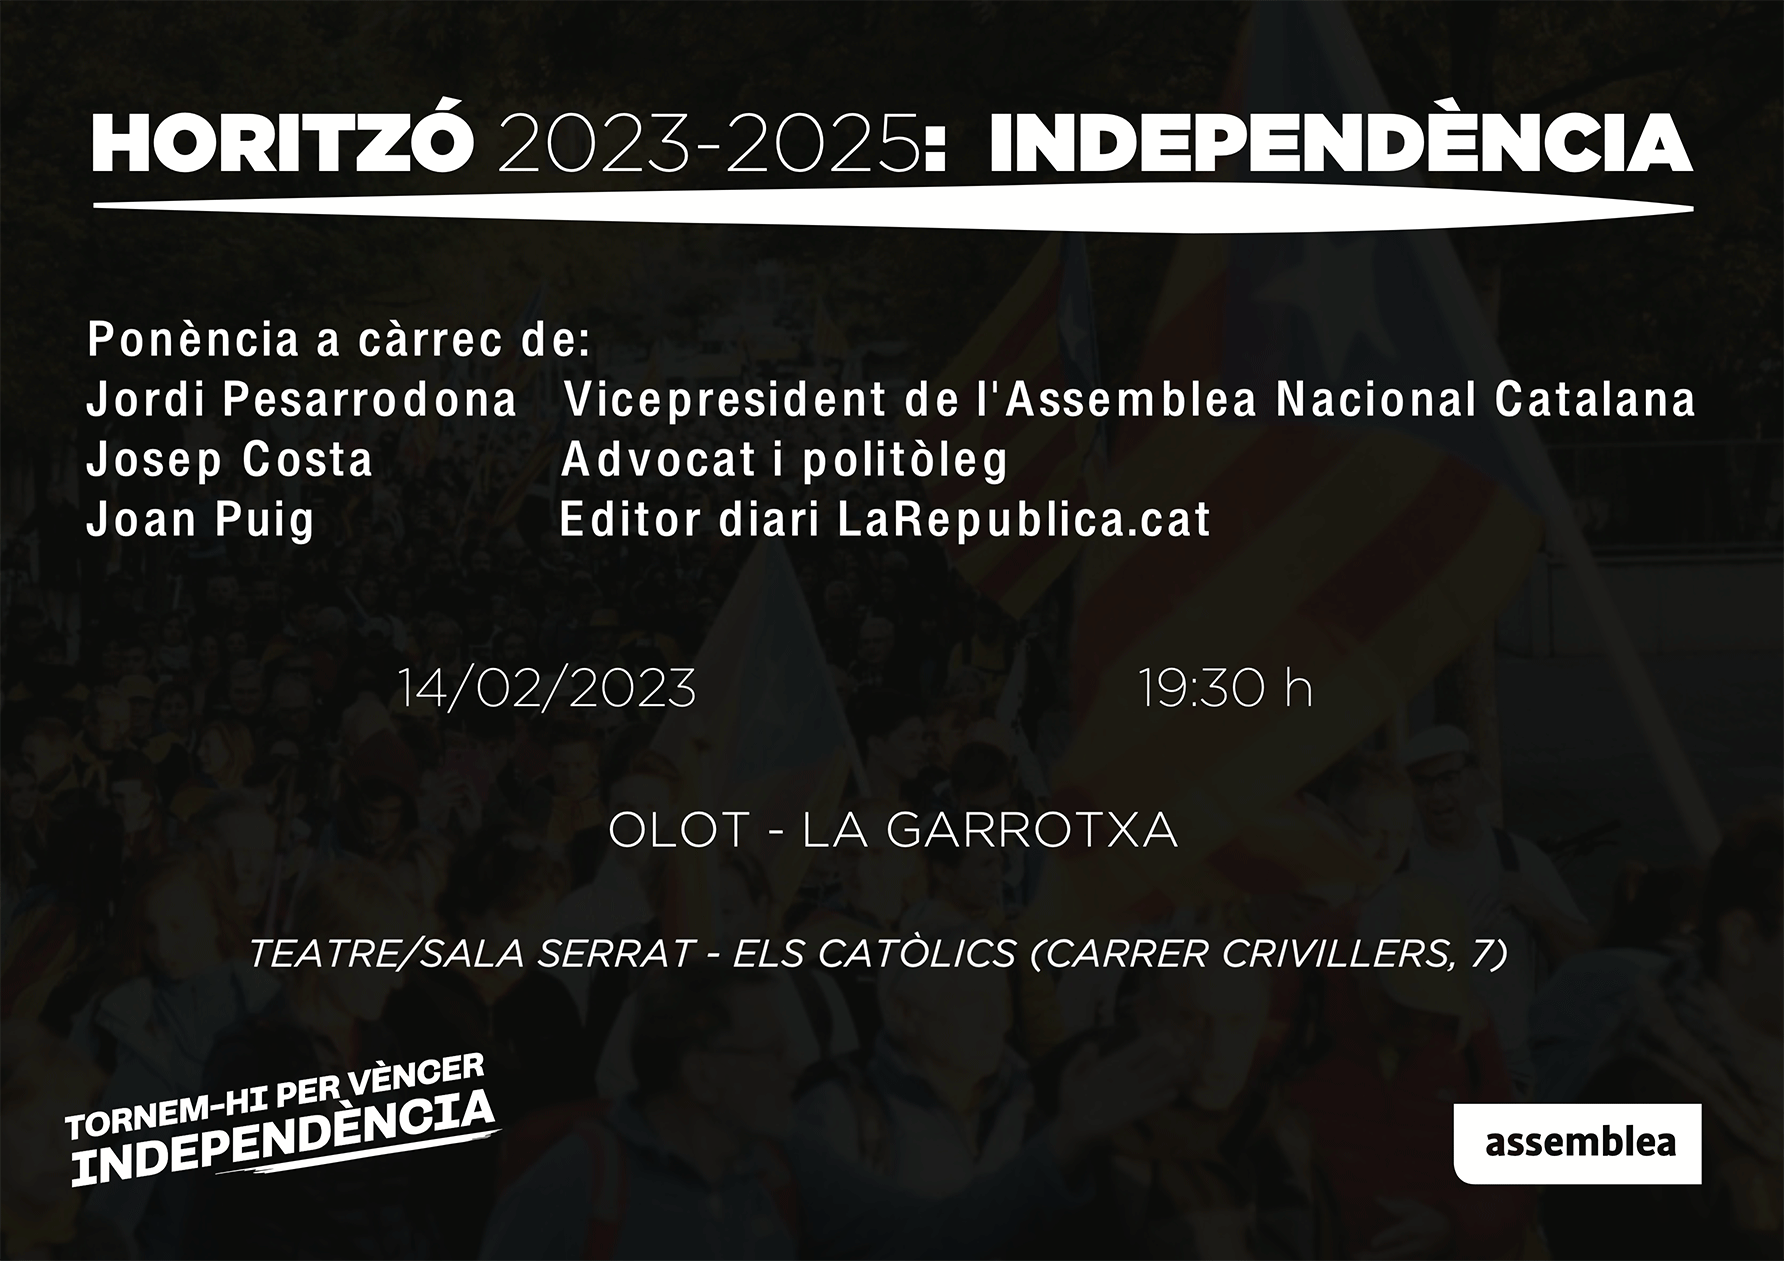 Horitzó 2023-2025: Independència